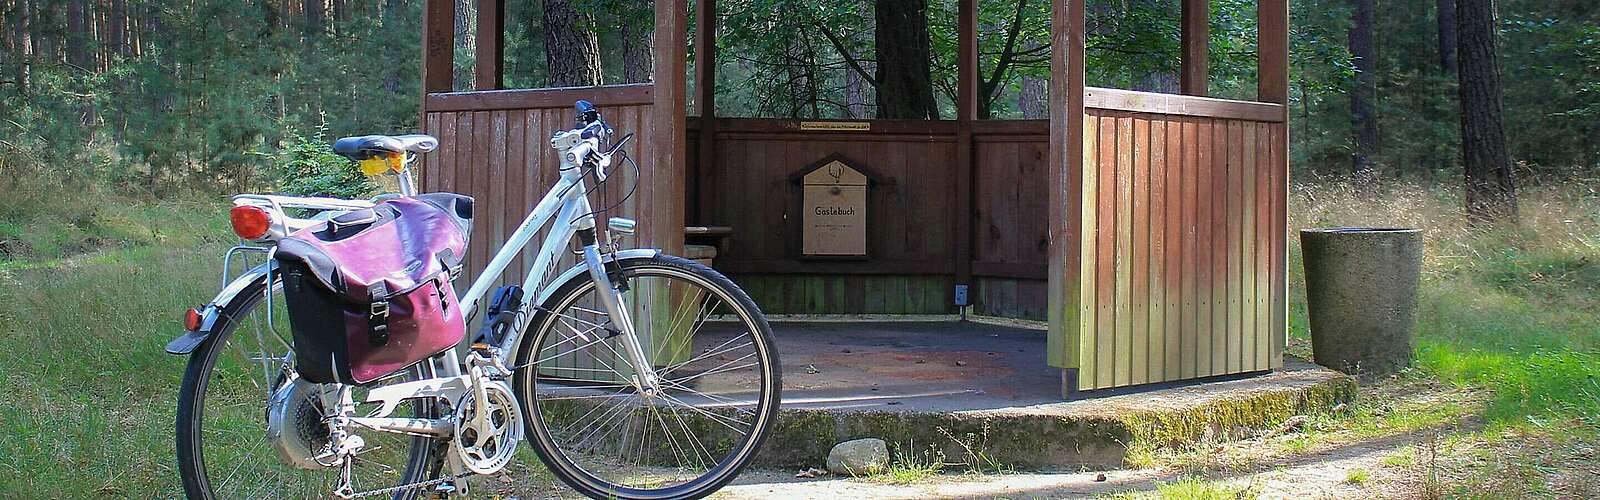 Fahrrad an Schutzhütte bei Tour zum Mittelpunkt,
        
    

        Foto: Fotograf / Lizenz - Media Import/Fotograf / Lizenz - Media Import